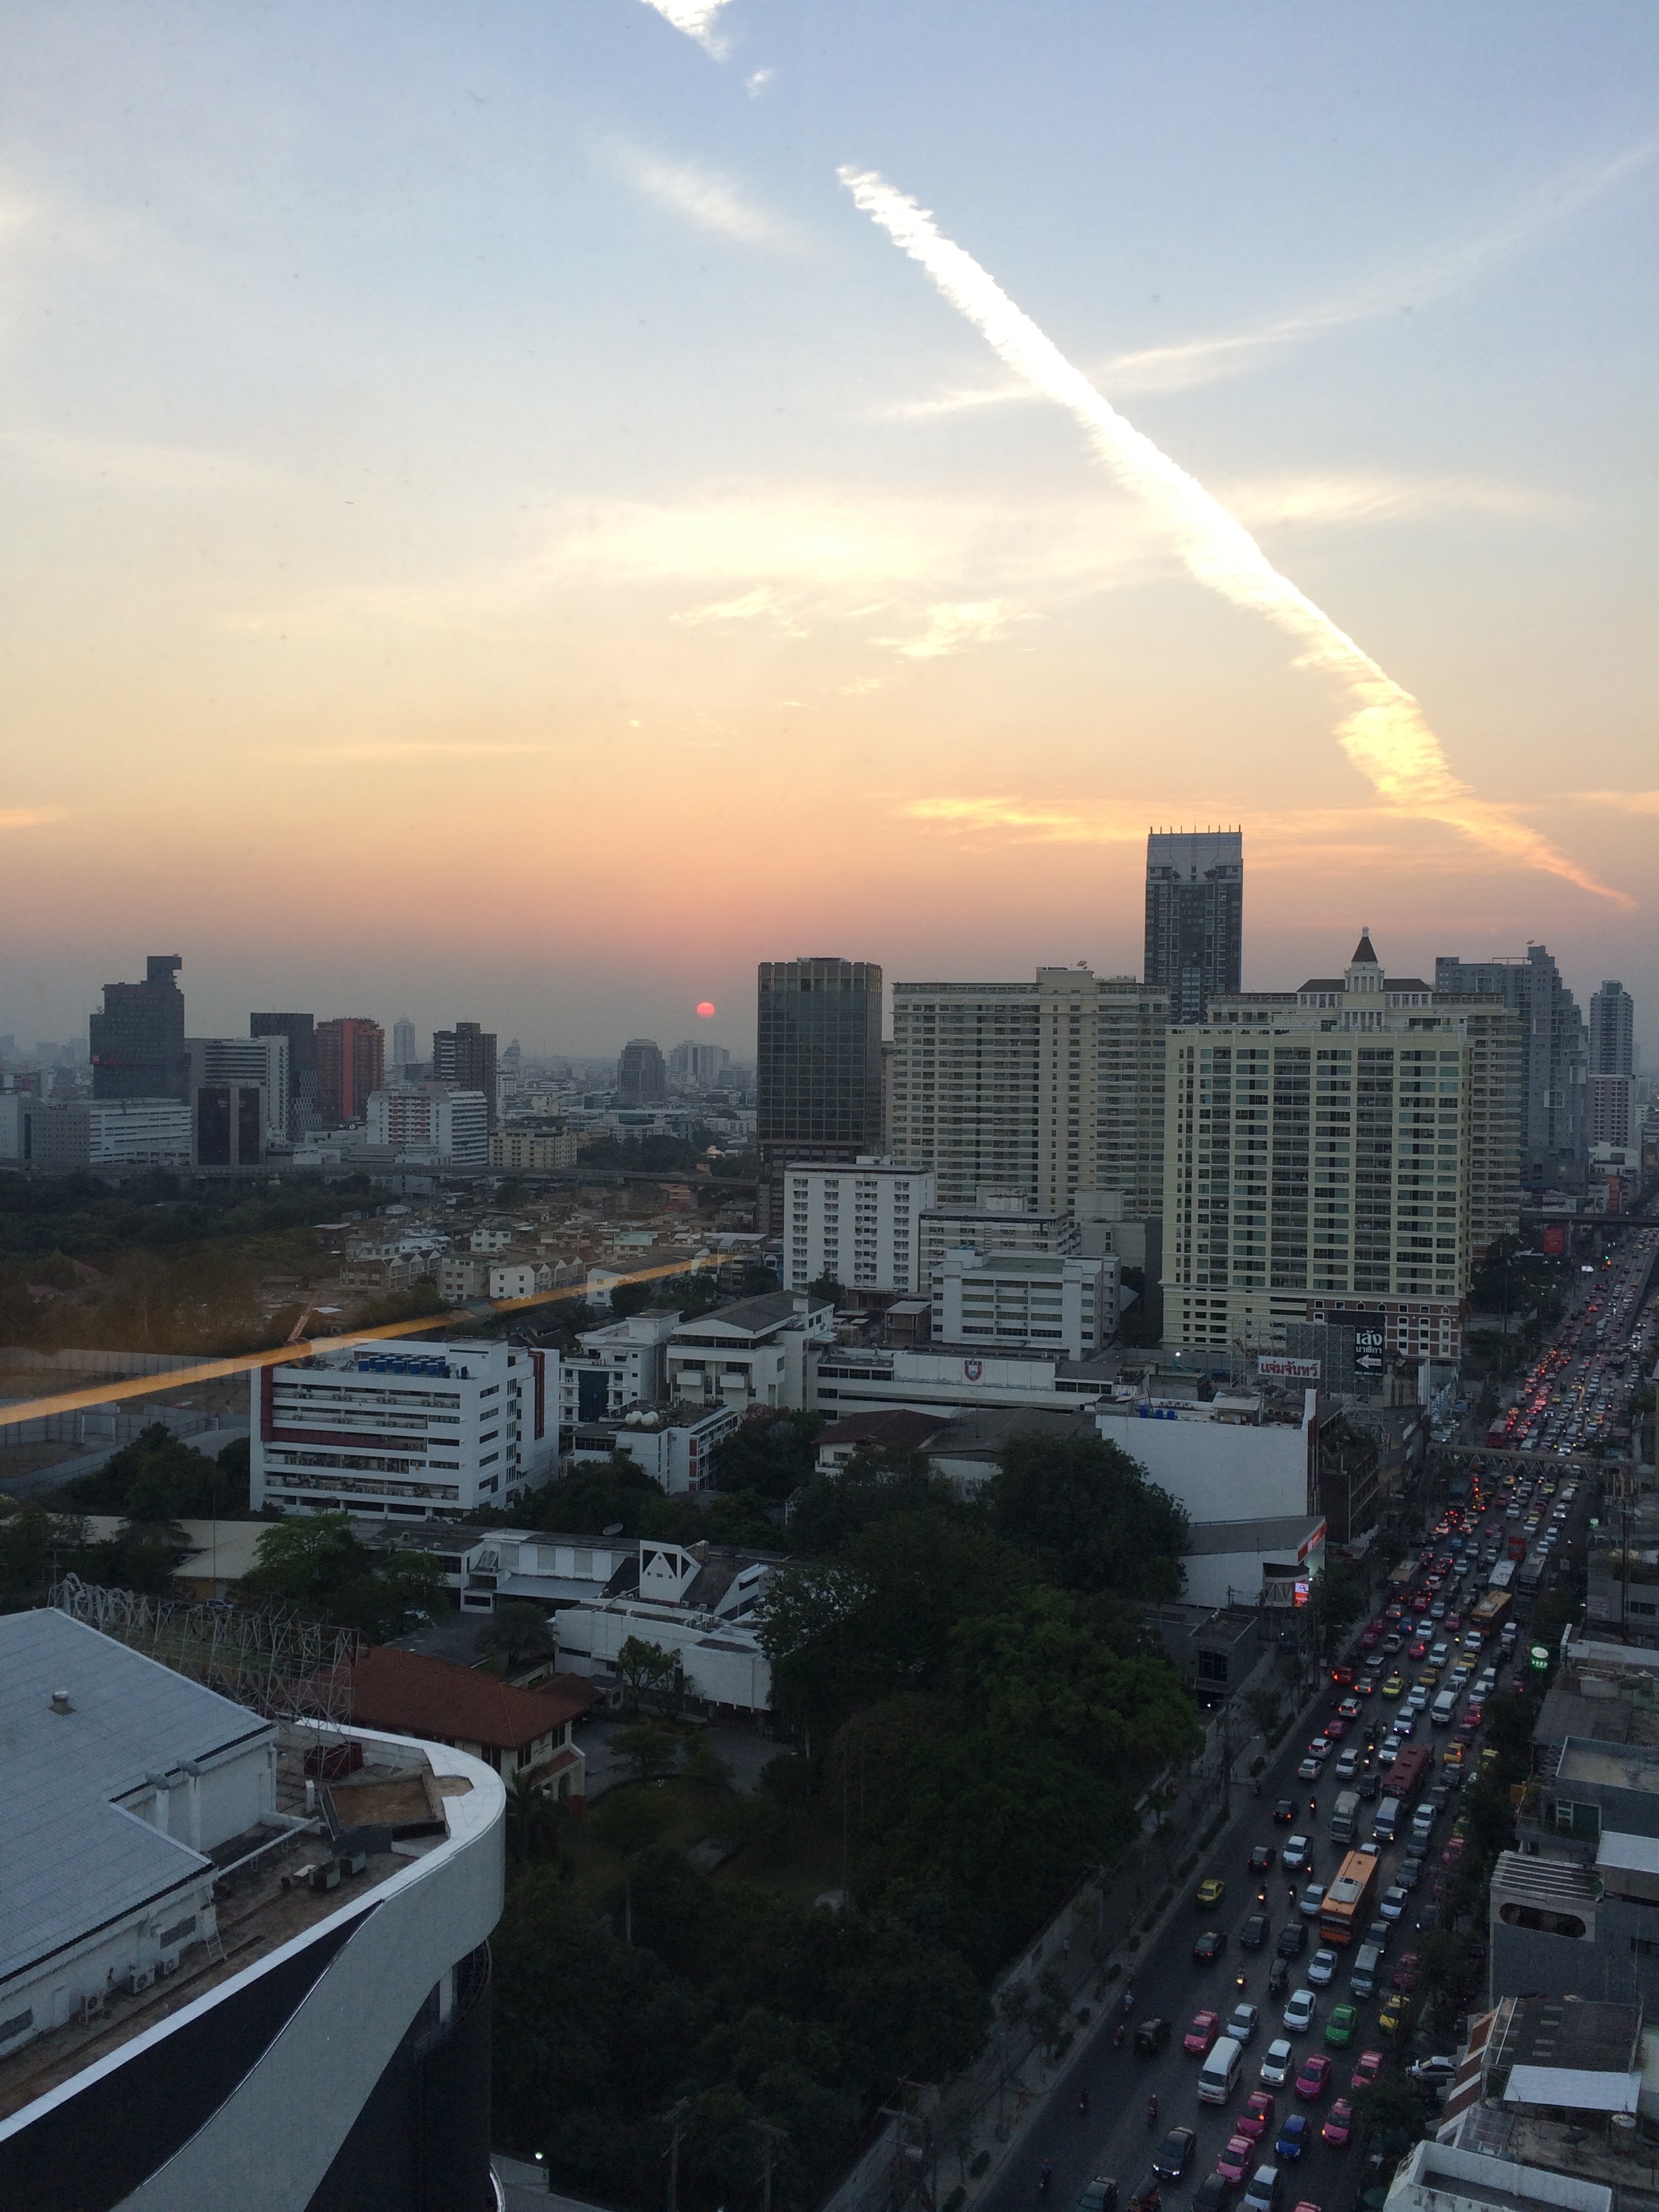 Traffic at sunset in Bangkok